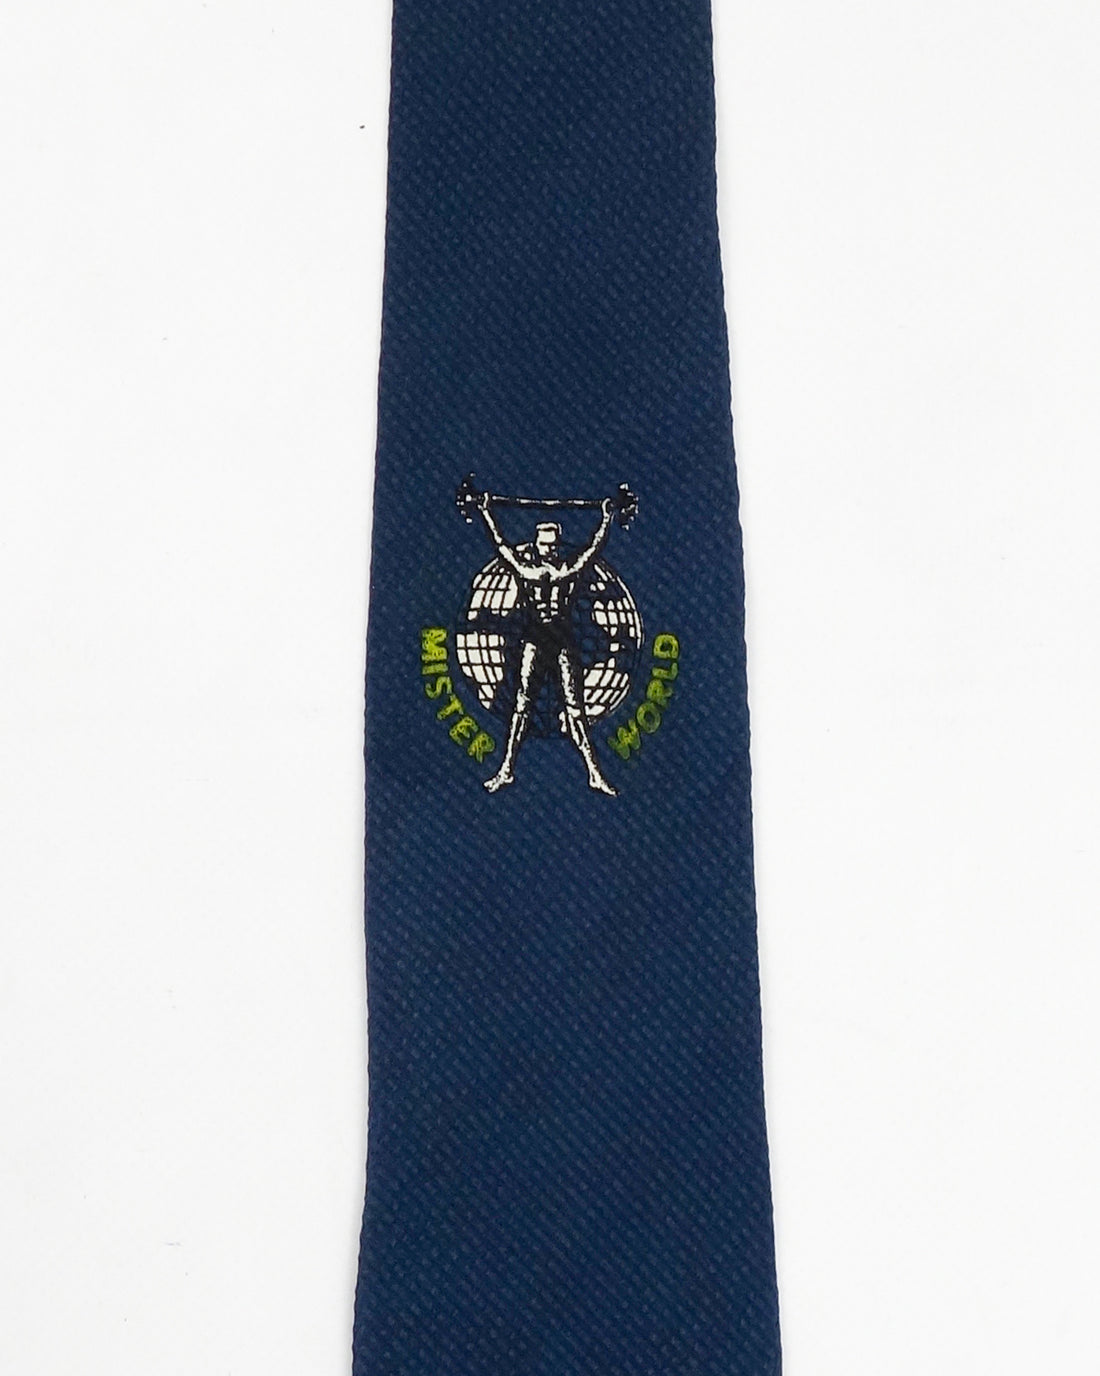 Jean Paul Gaultier Mr. World Blue Tie 1990´s